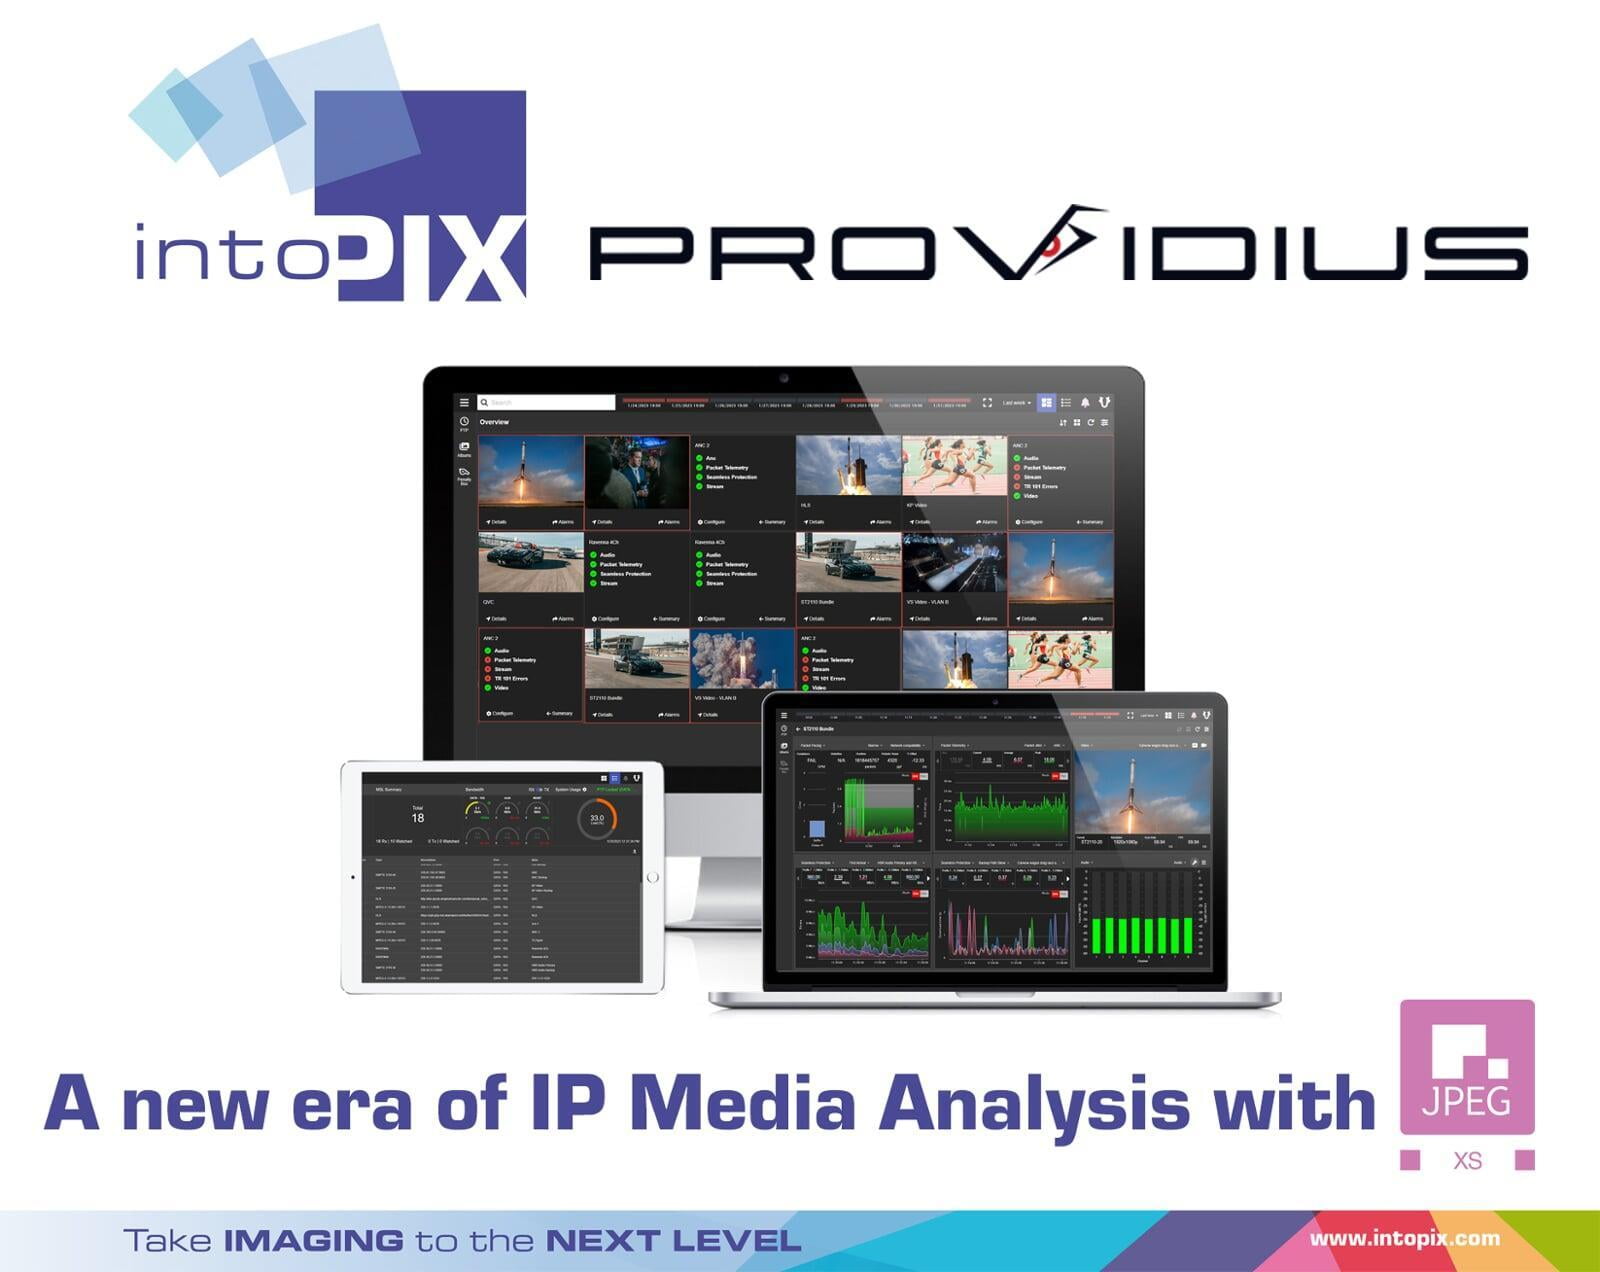 Providius가 판도를 바꾸는 intoPIX JPEG XS 코덱을 추가하여 IP 미디어 분석의 새로운 시대를 예고합니다.